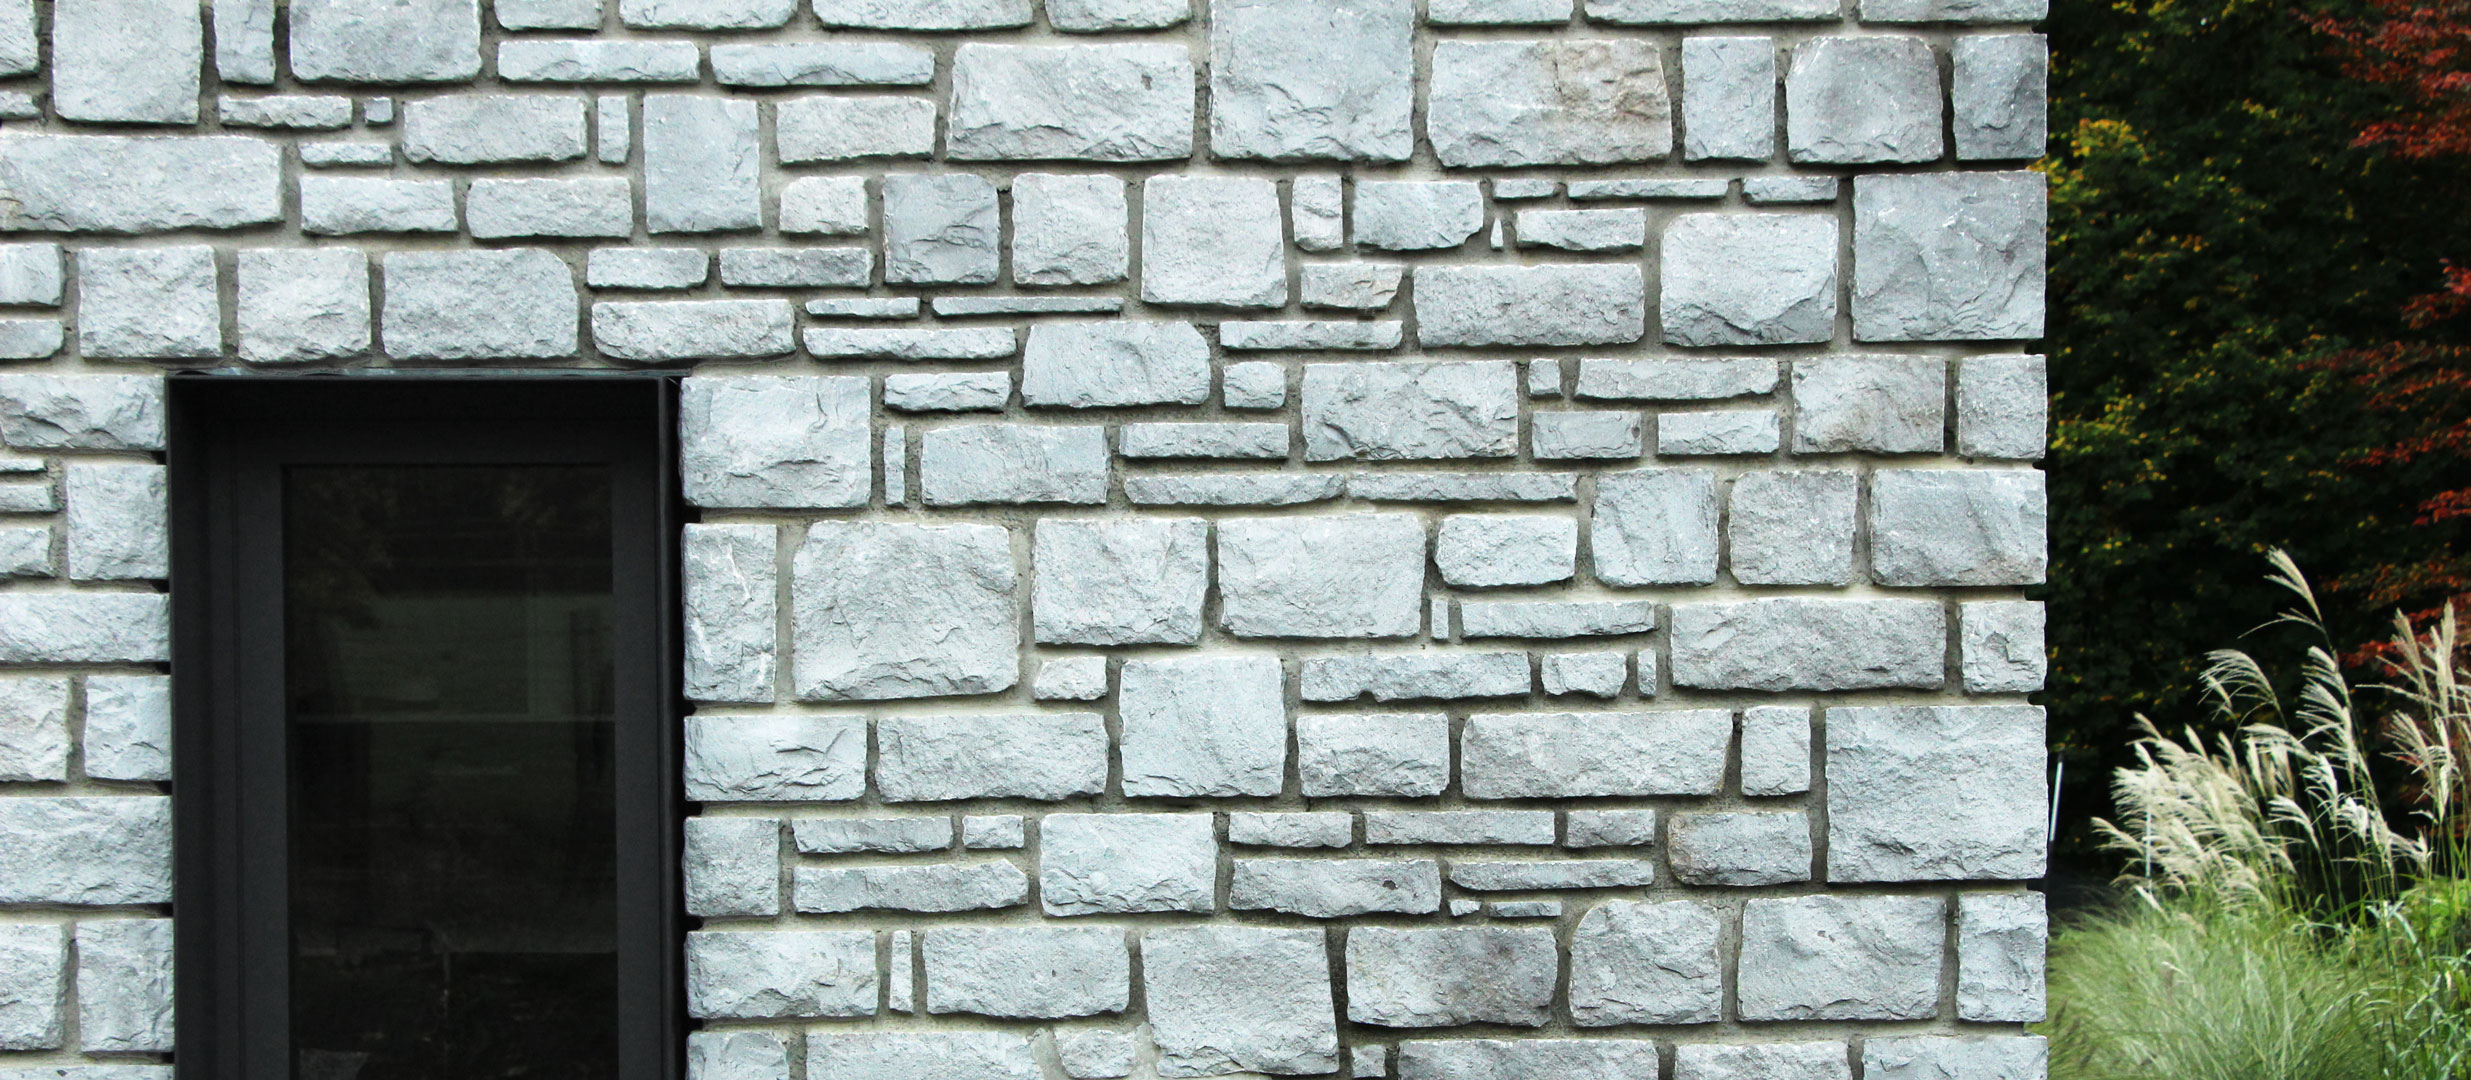 Réalisation d'un mur en pierre avec encadrement métallique